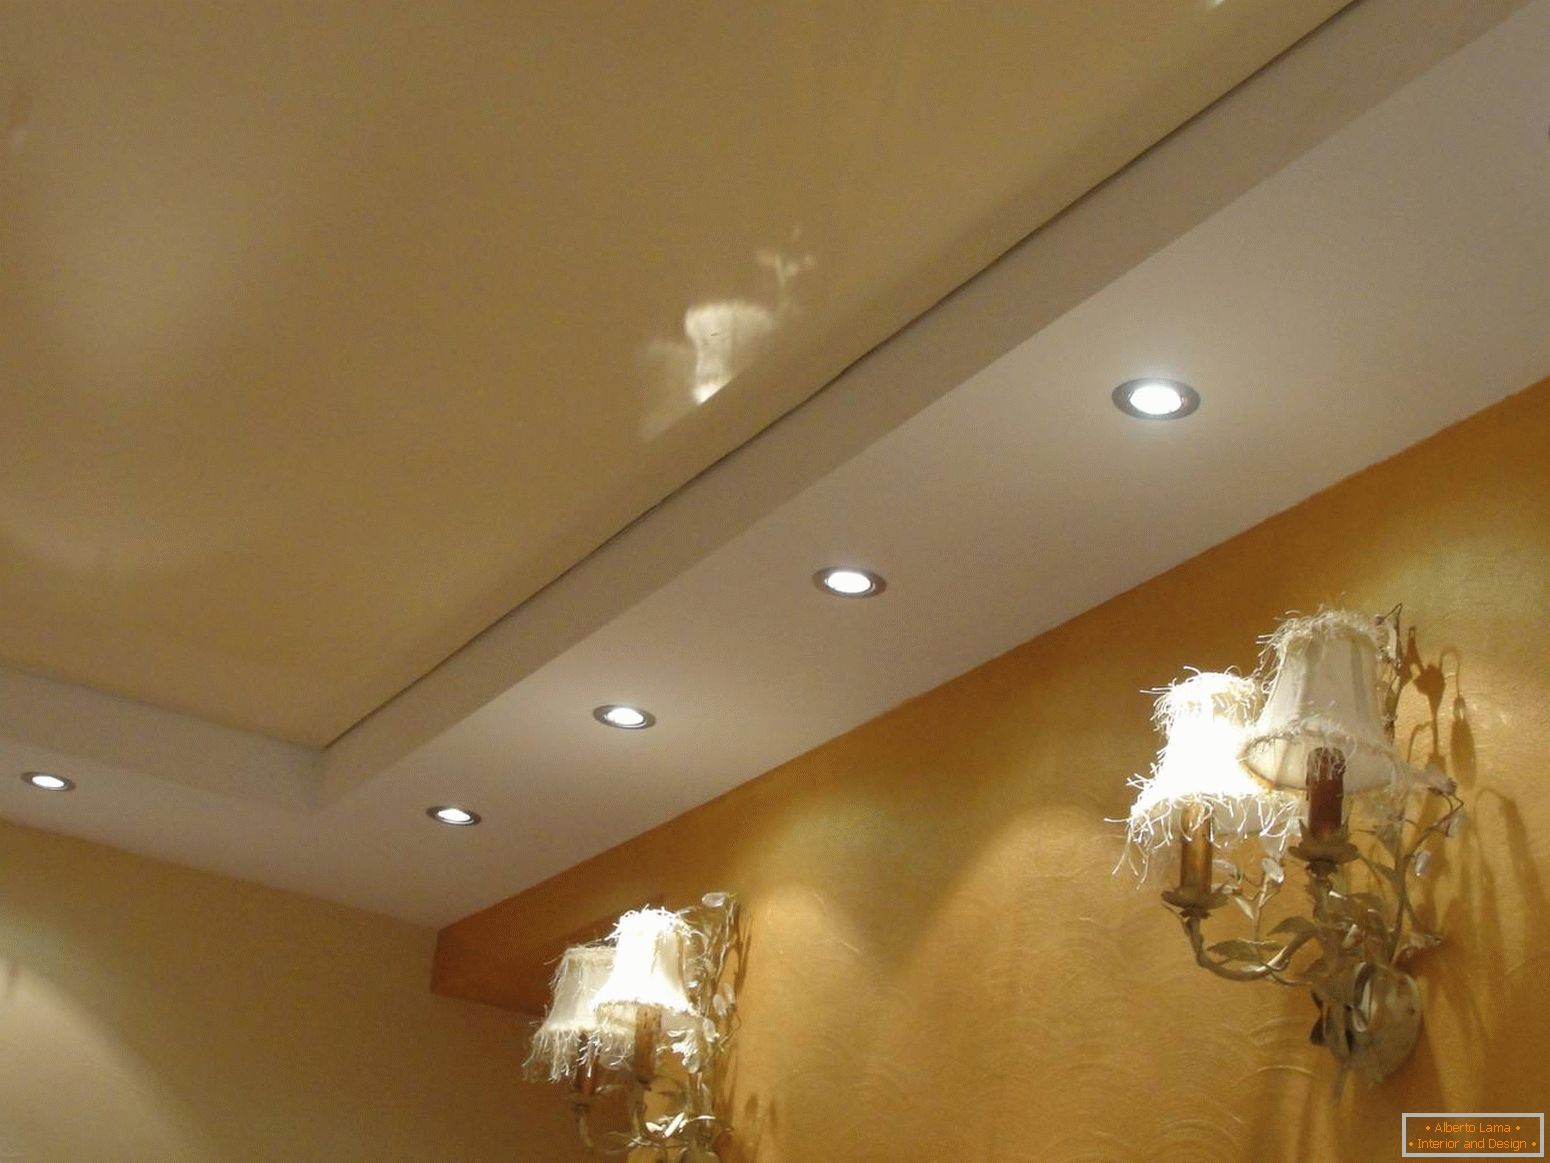 El techo es de un tono beige suave con iluminación correctamente seleccionada.